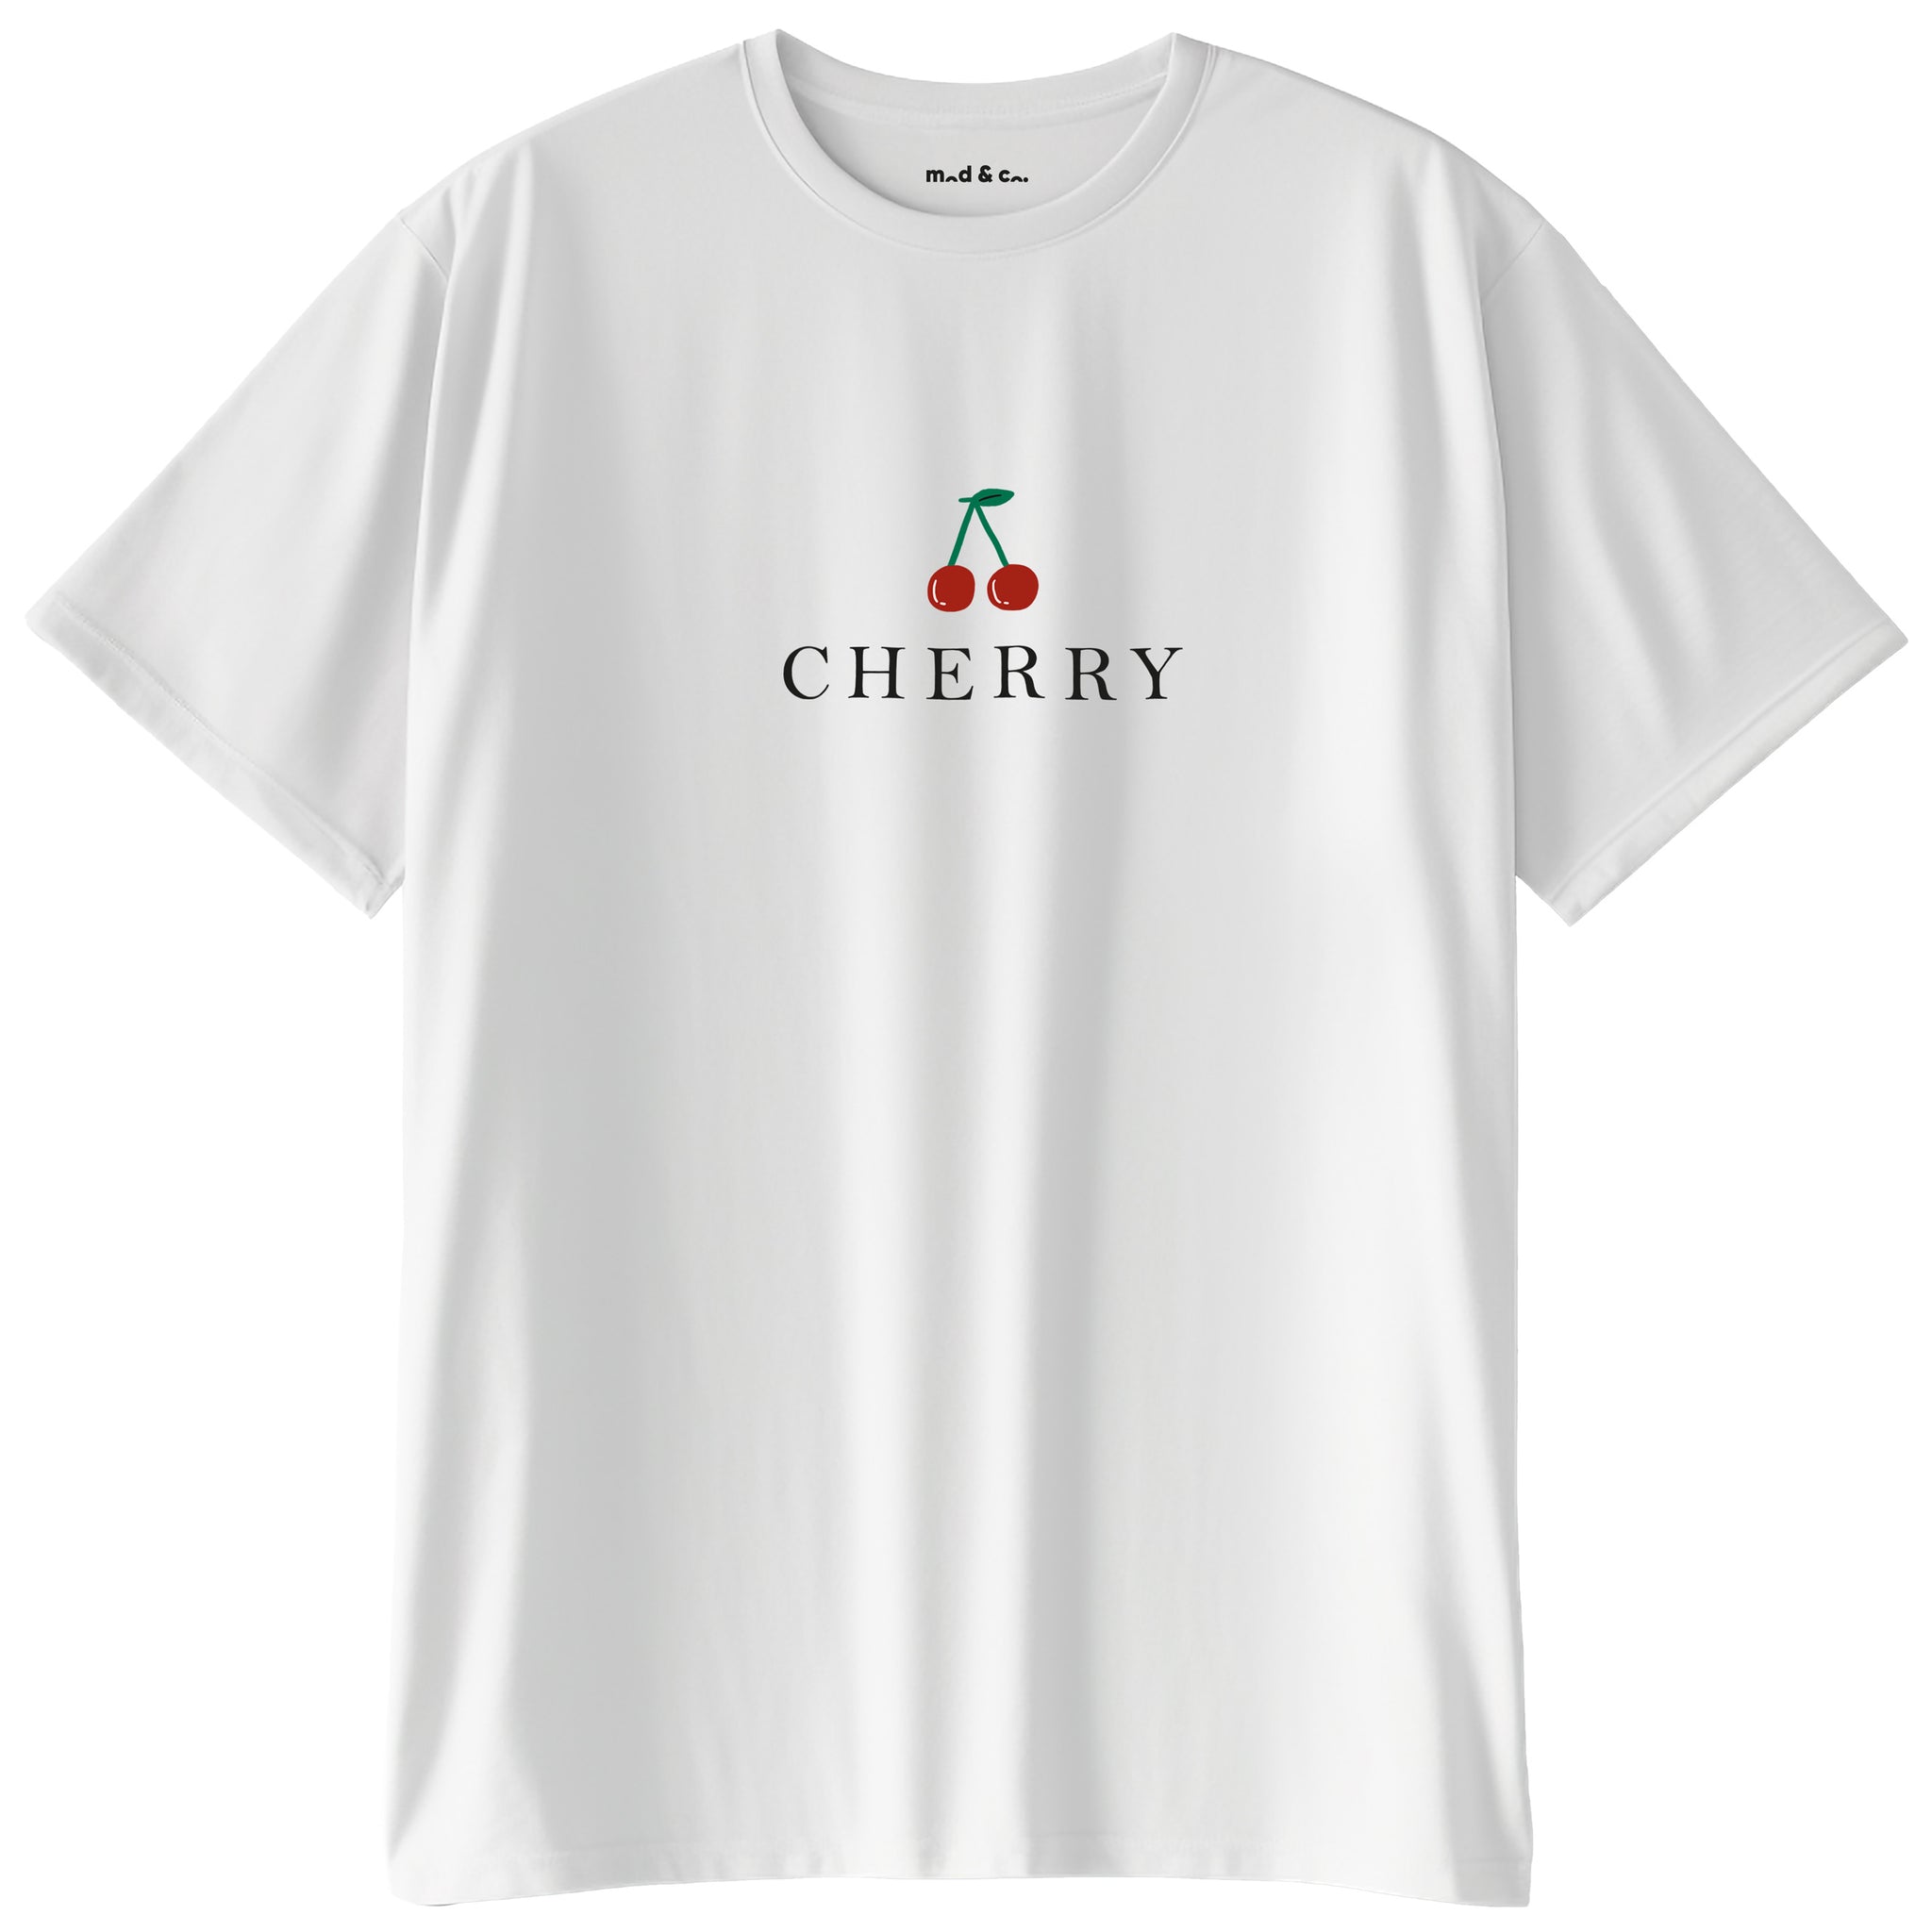 Cherry Oversize T-Shirt